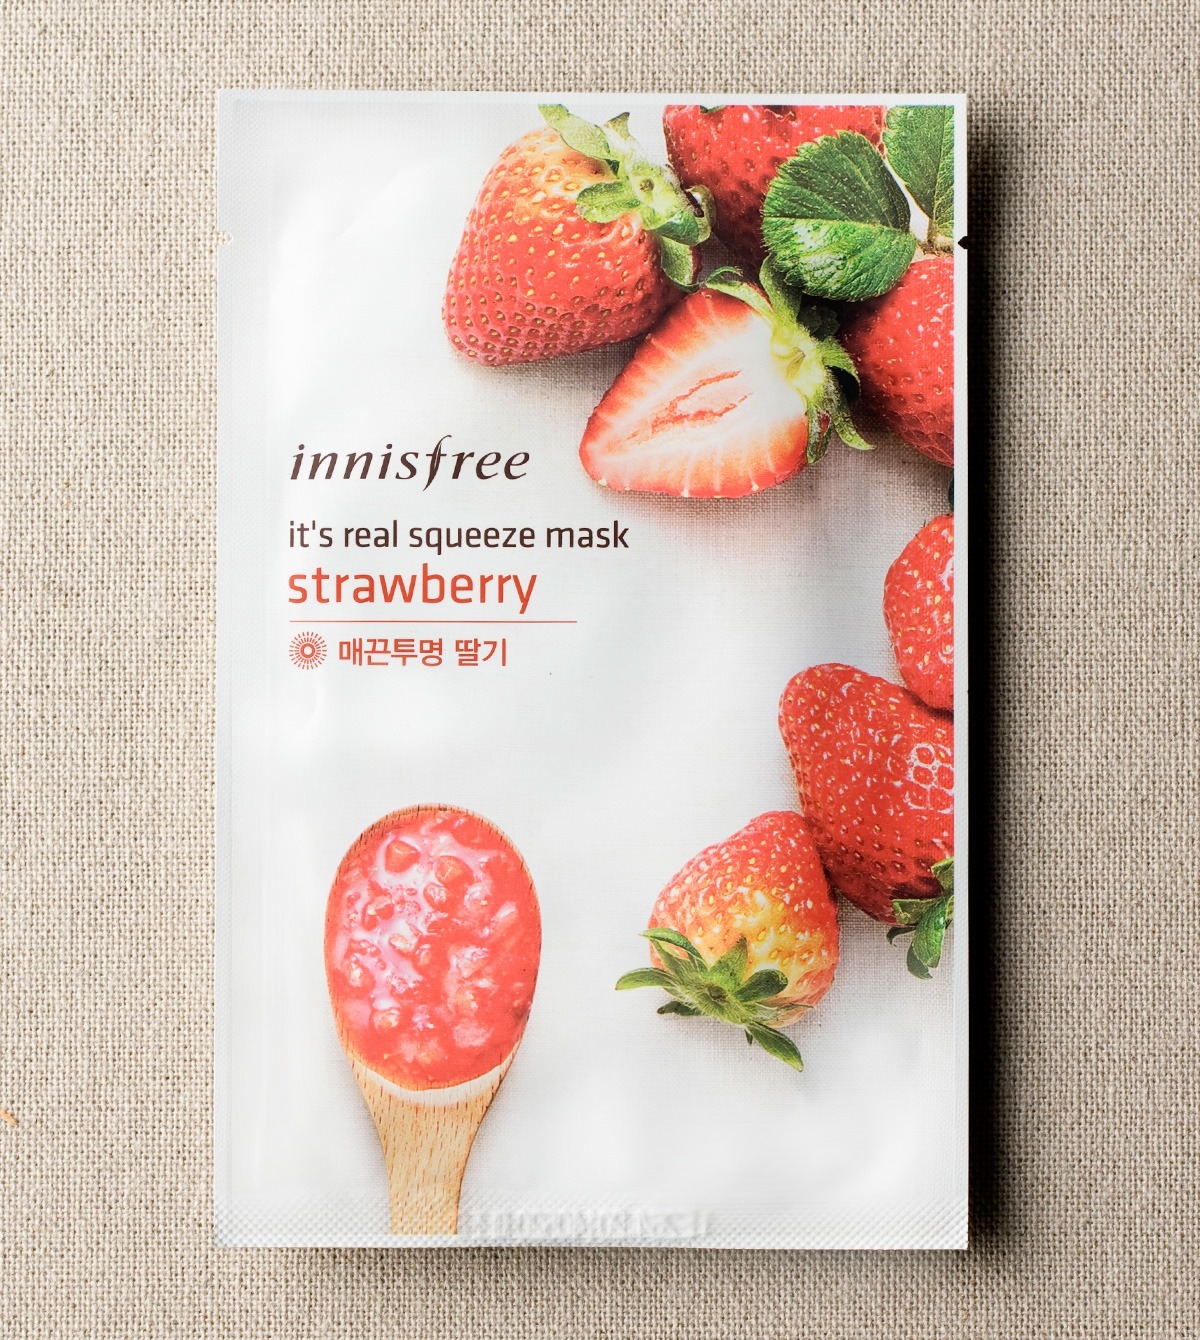 mat-na-dau-tay-duong-trang-da-cai-thien-tone-mau-da-innisfree-its-real-squeeze-mask-strawberry-1